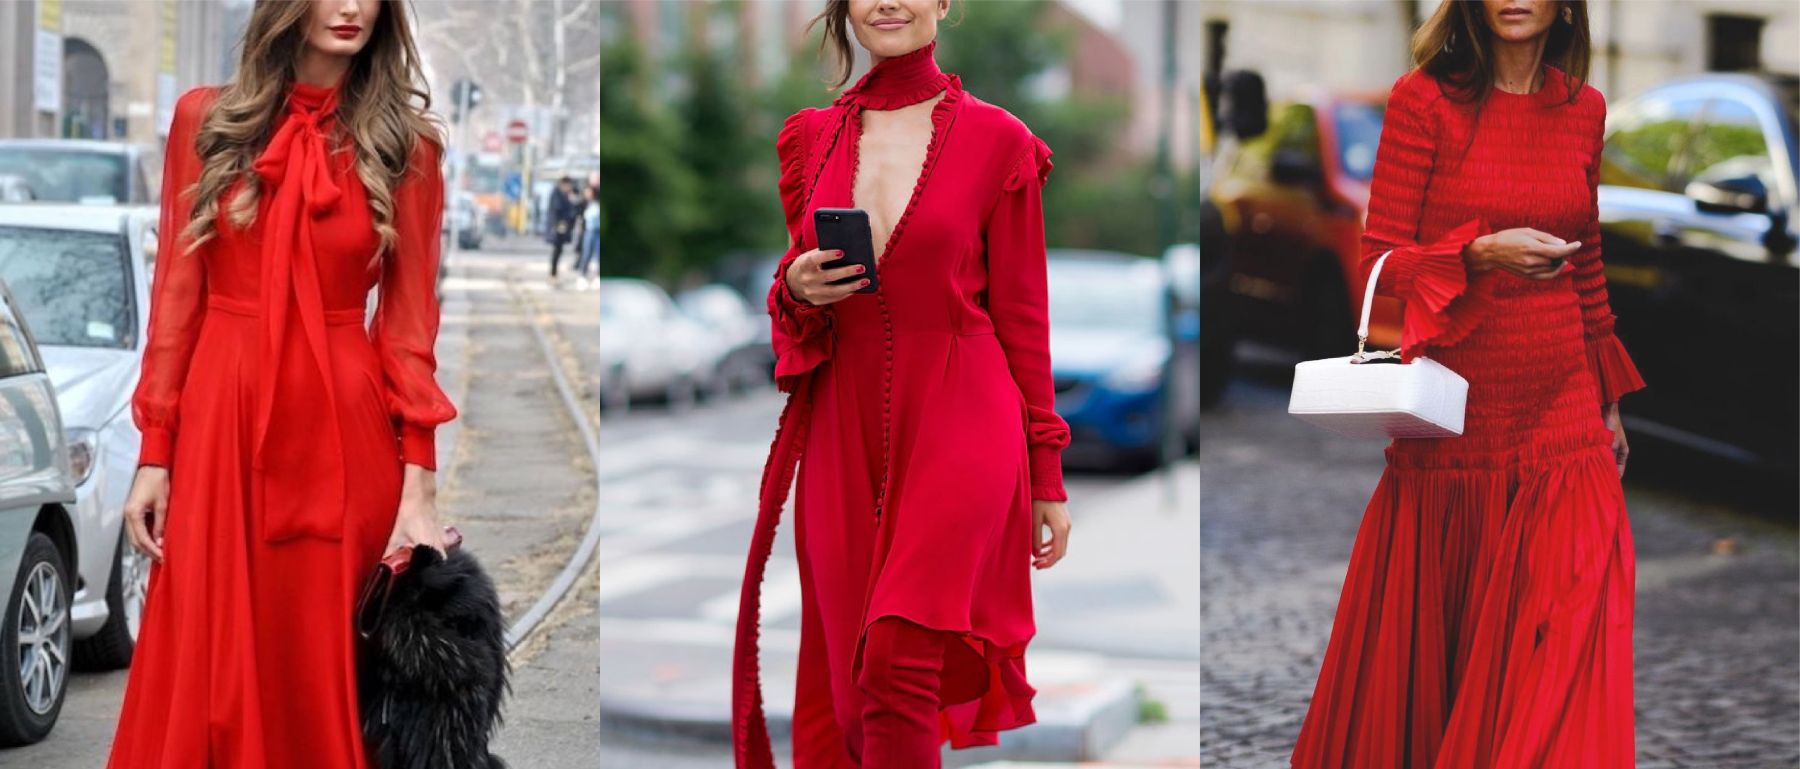 Idées de looks en robe rouge - Lookiero ...